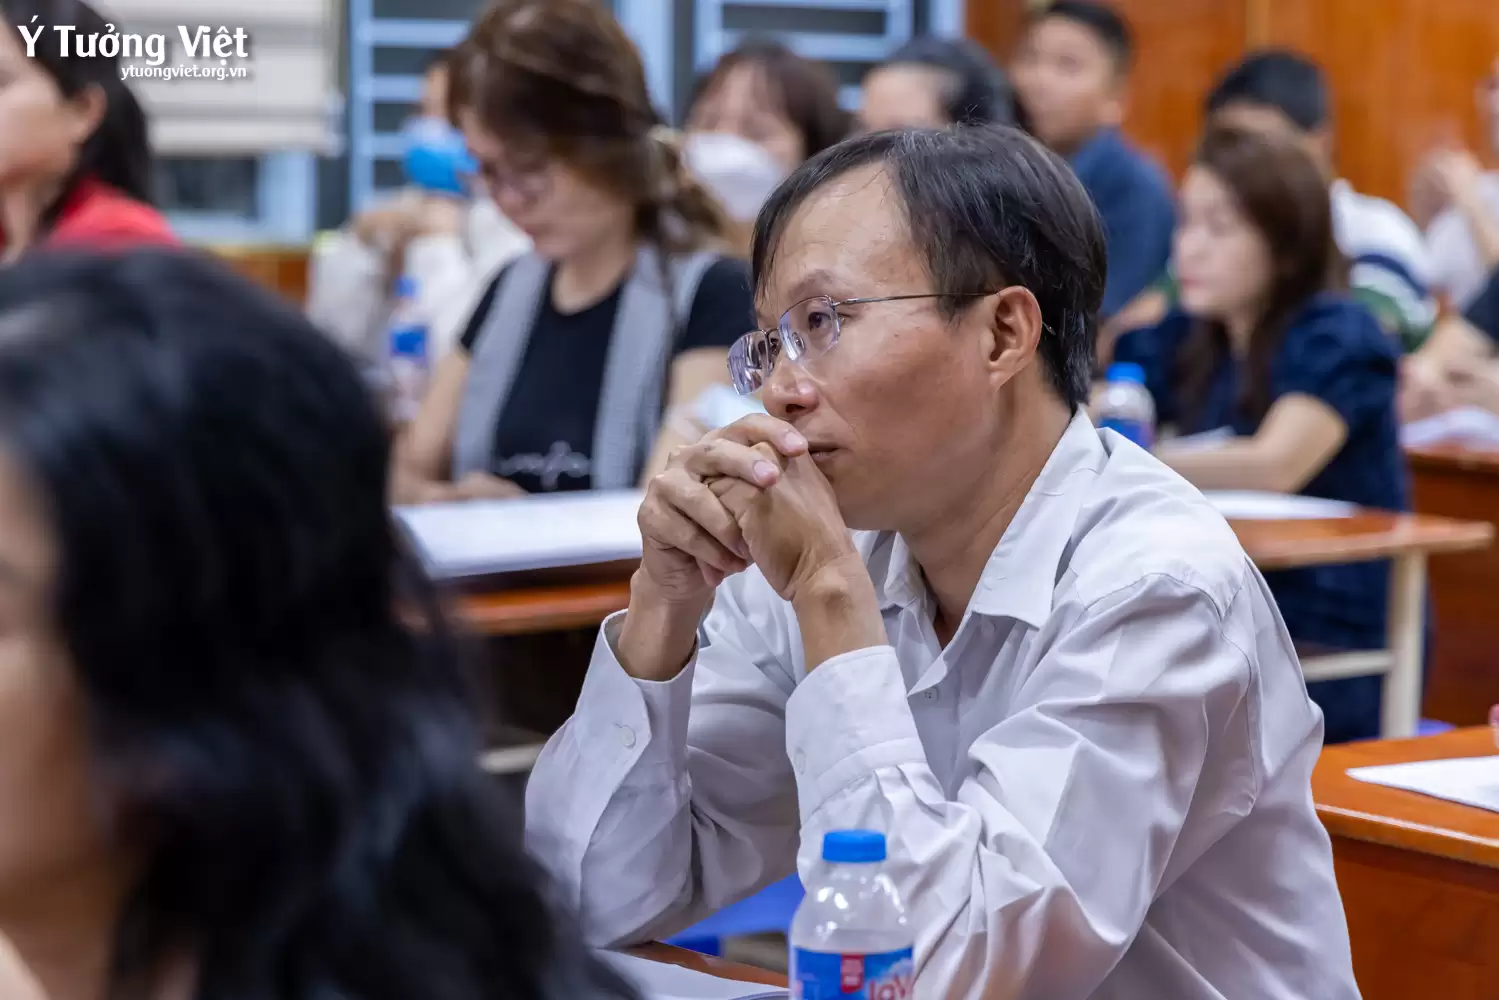 Dự án tư vấn tâm lý học đường trường TH Phan Chu Trinh | Chuyên đề “Nhận diện những khó khăn tâm lý của con và các giải pháp”